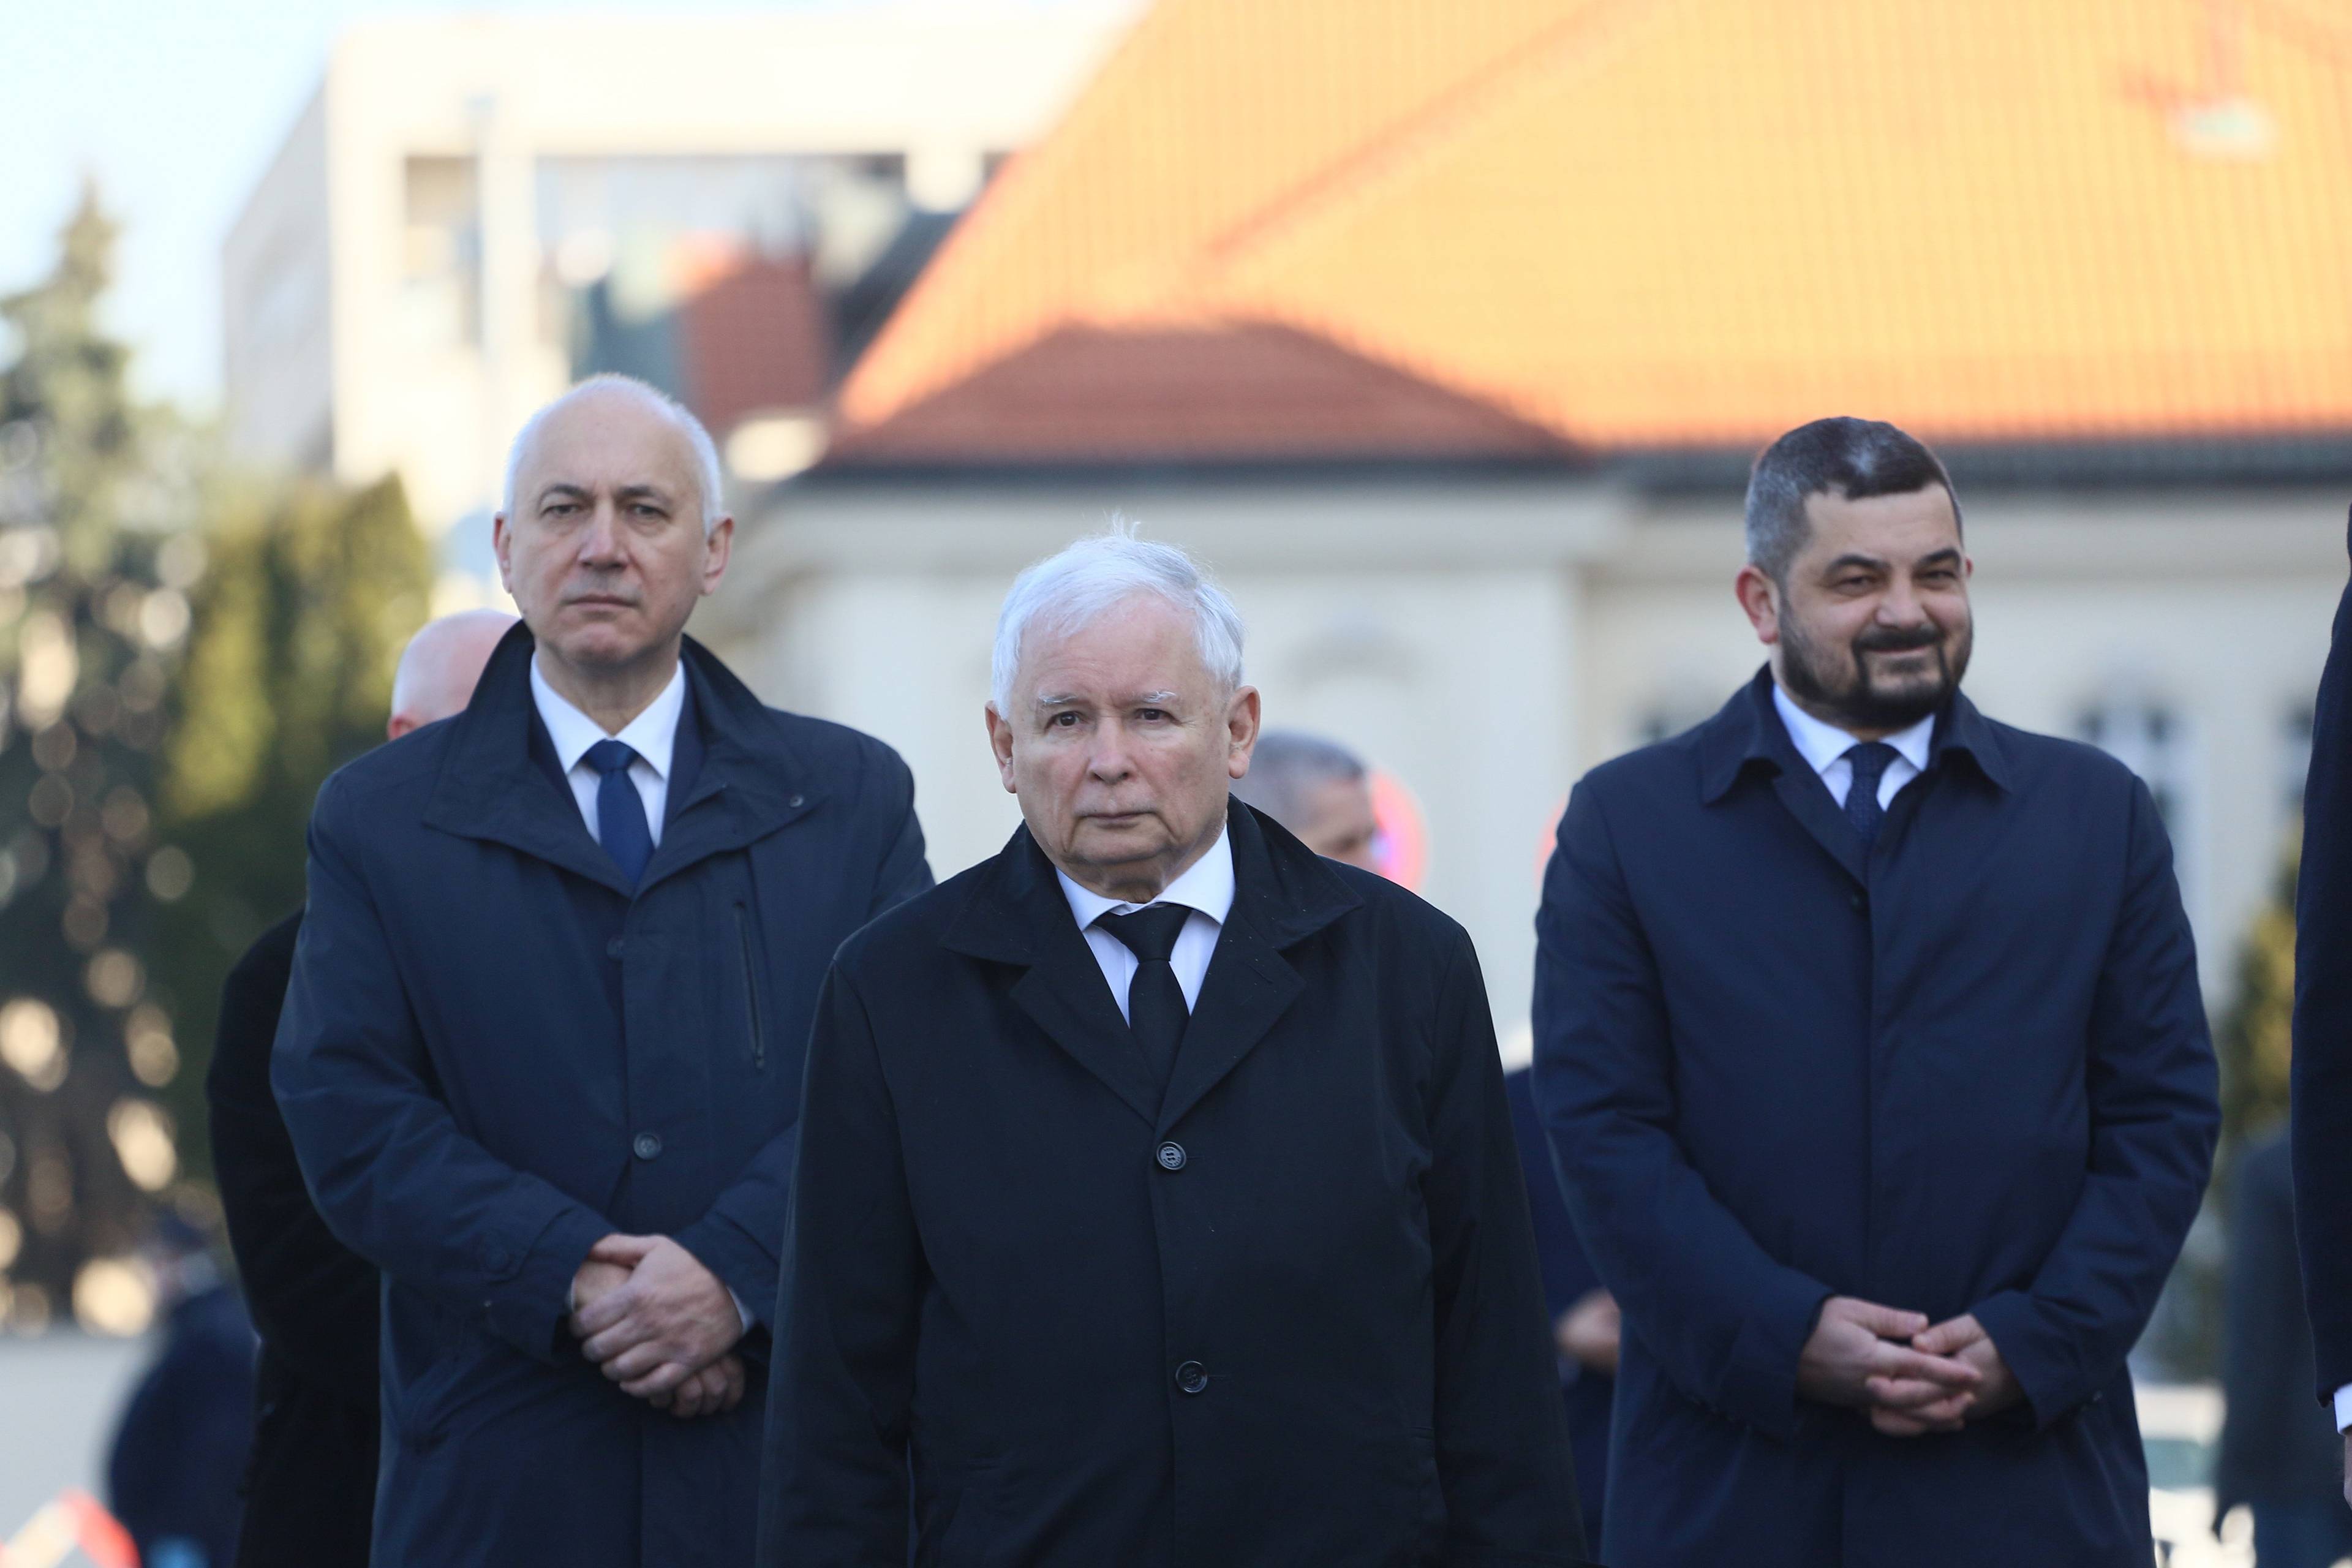 Trzej meżczyźni w ciemnych jesionkach, pod krawatami: Brudziński, Kaczyński i Sobolewski